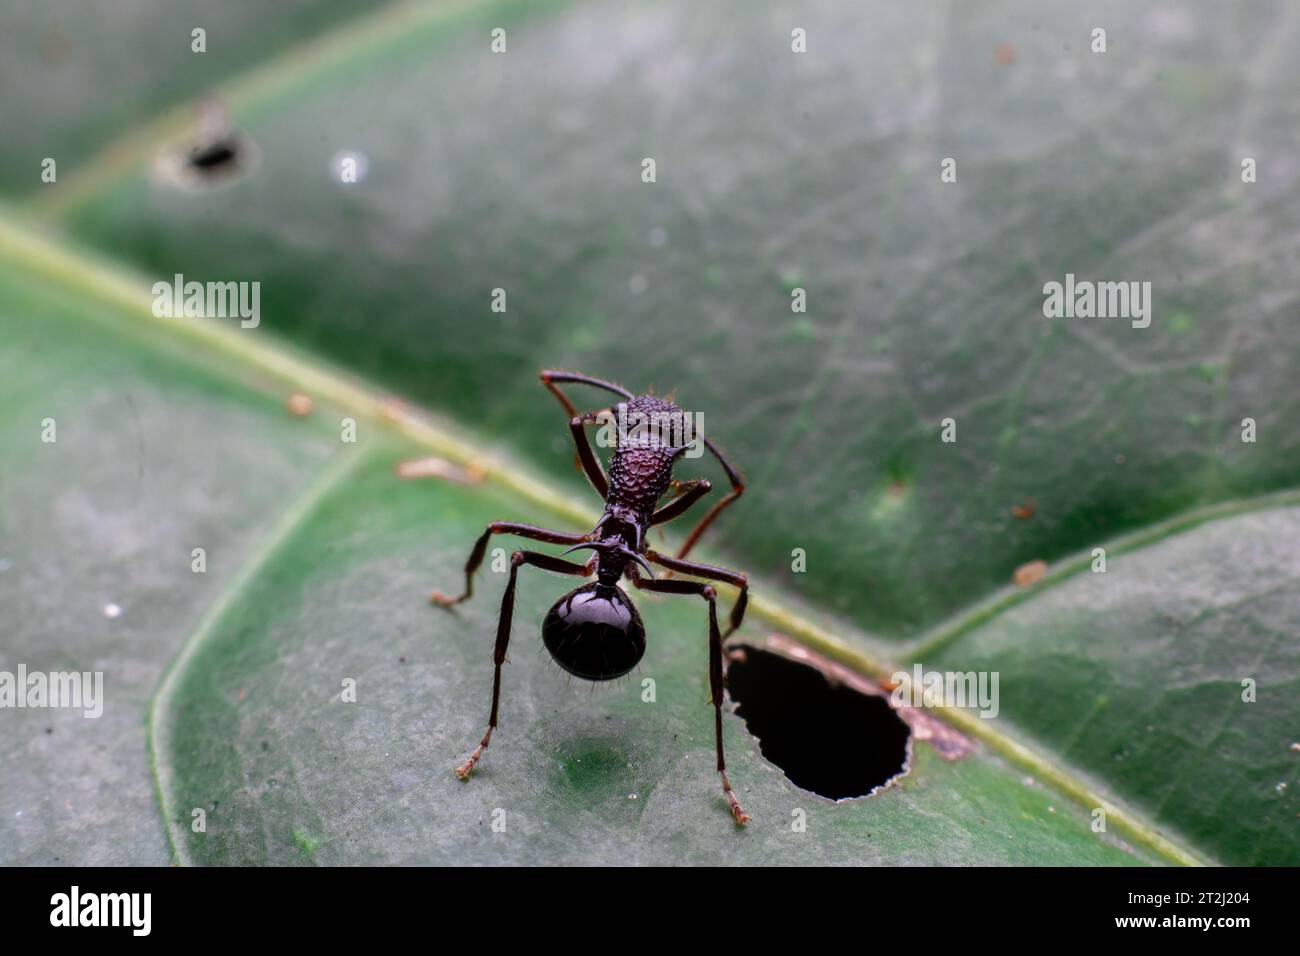 Einsame Ameise auf einem grünen Blatt Stockfoto